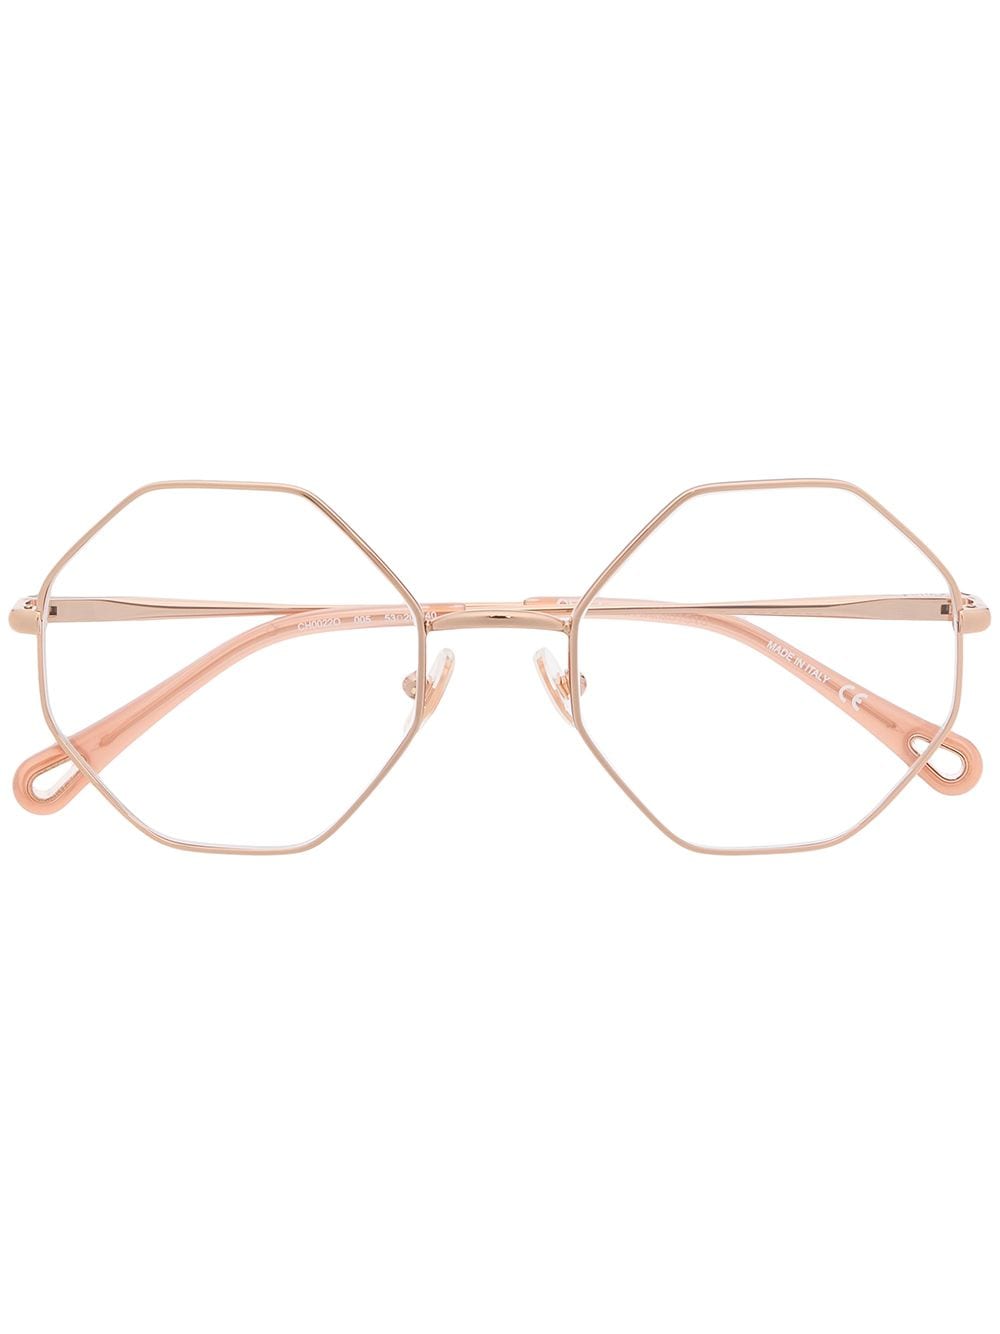 фото Chloé eyewear очки в восьмиугольной оправе